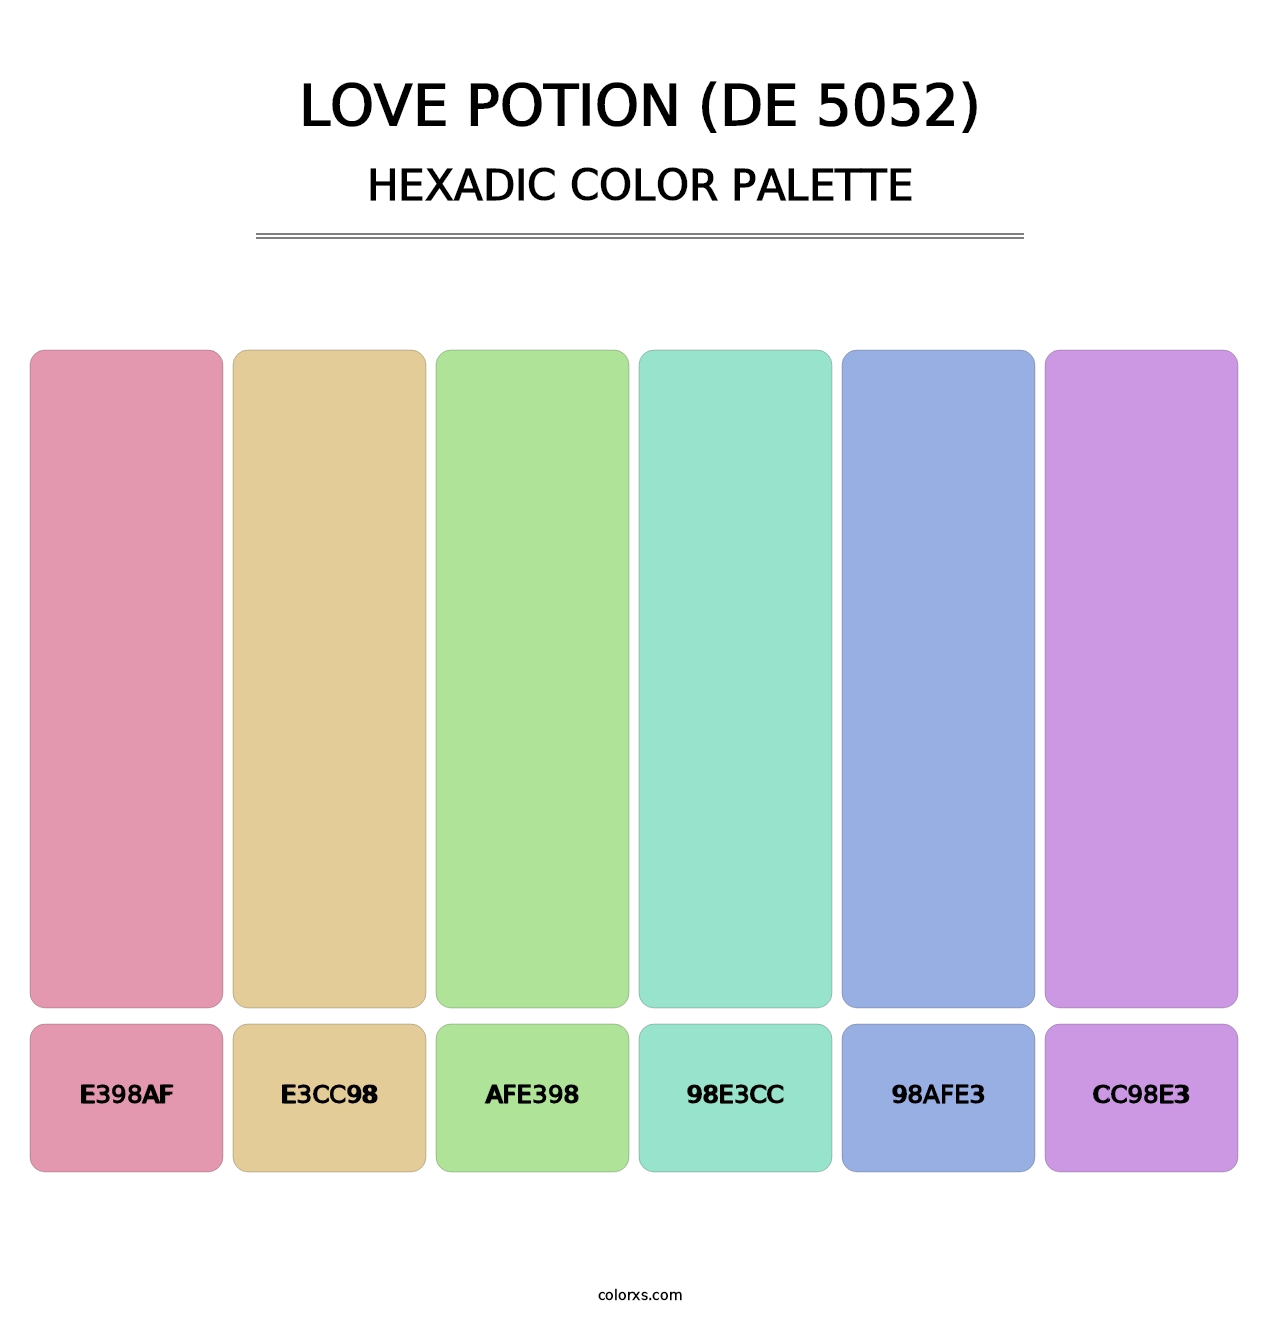 Love Potion (DE 5052) - Hexadic Color Palette